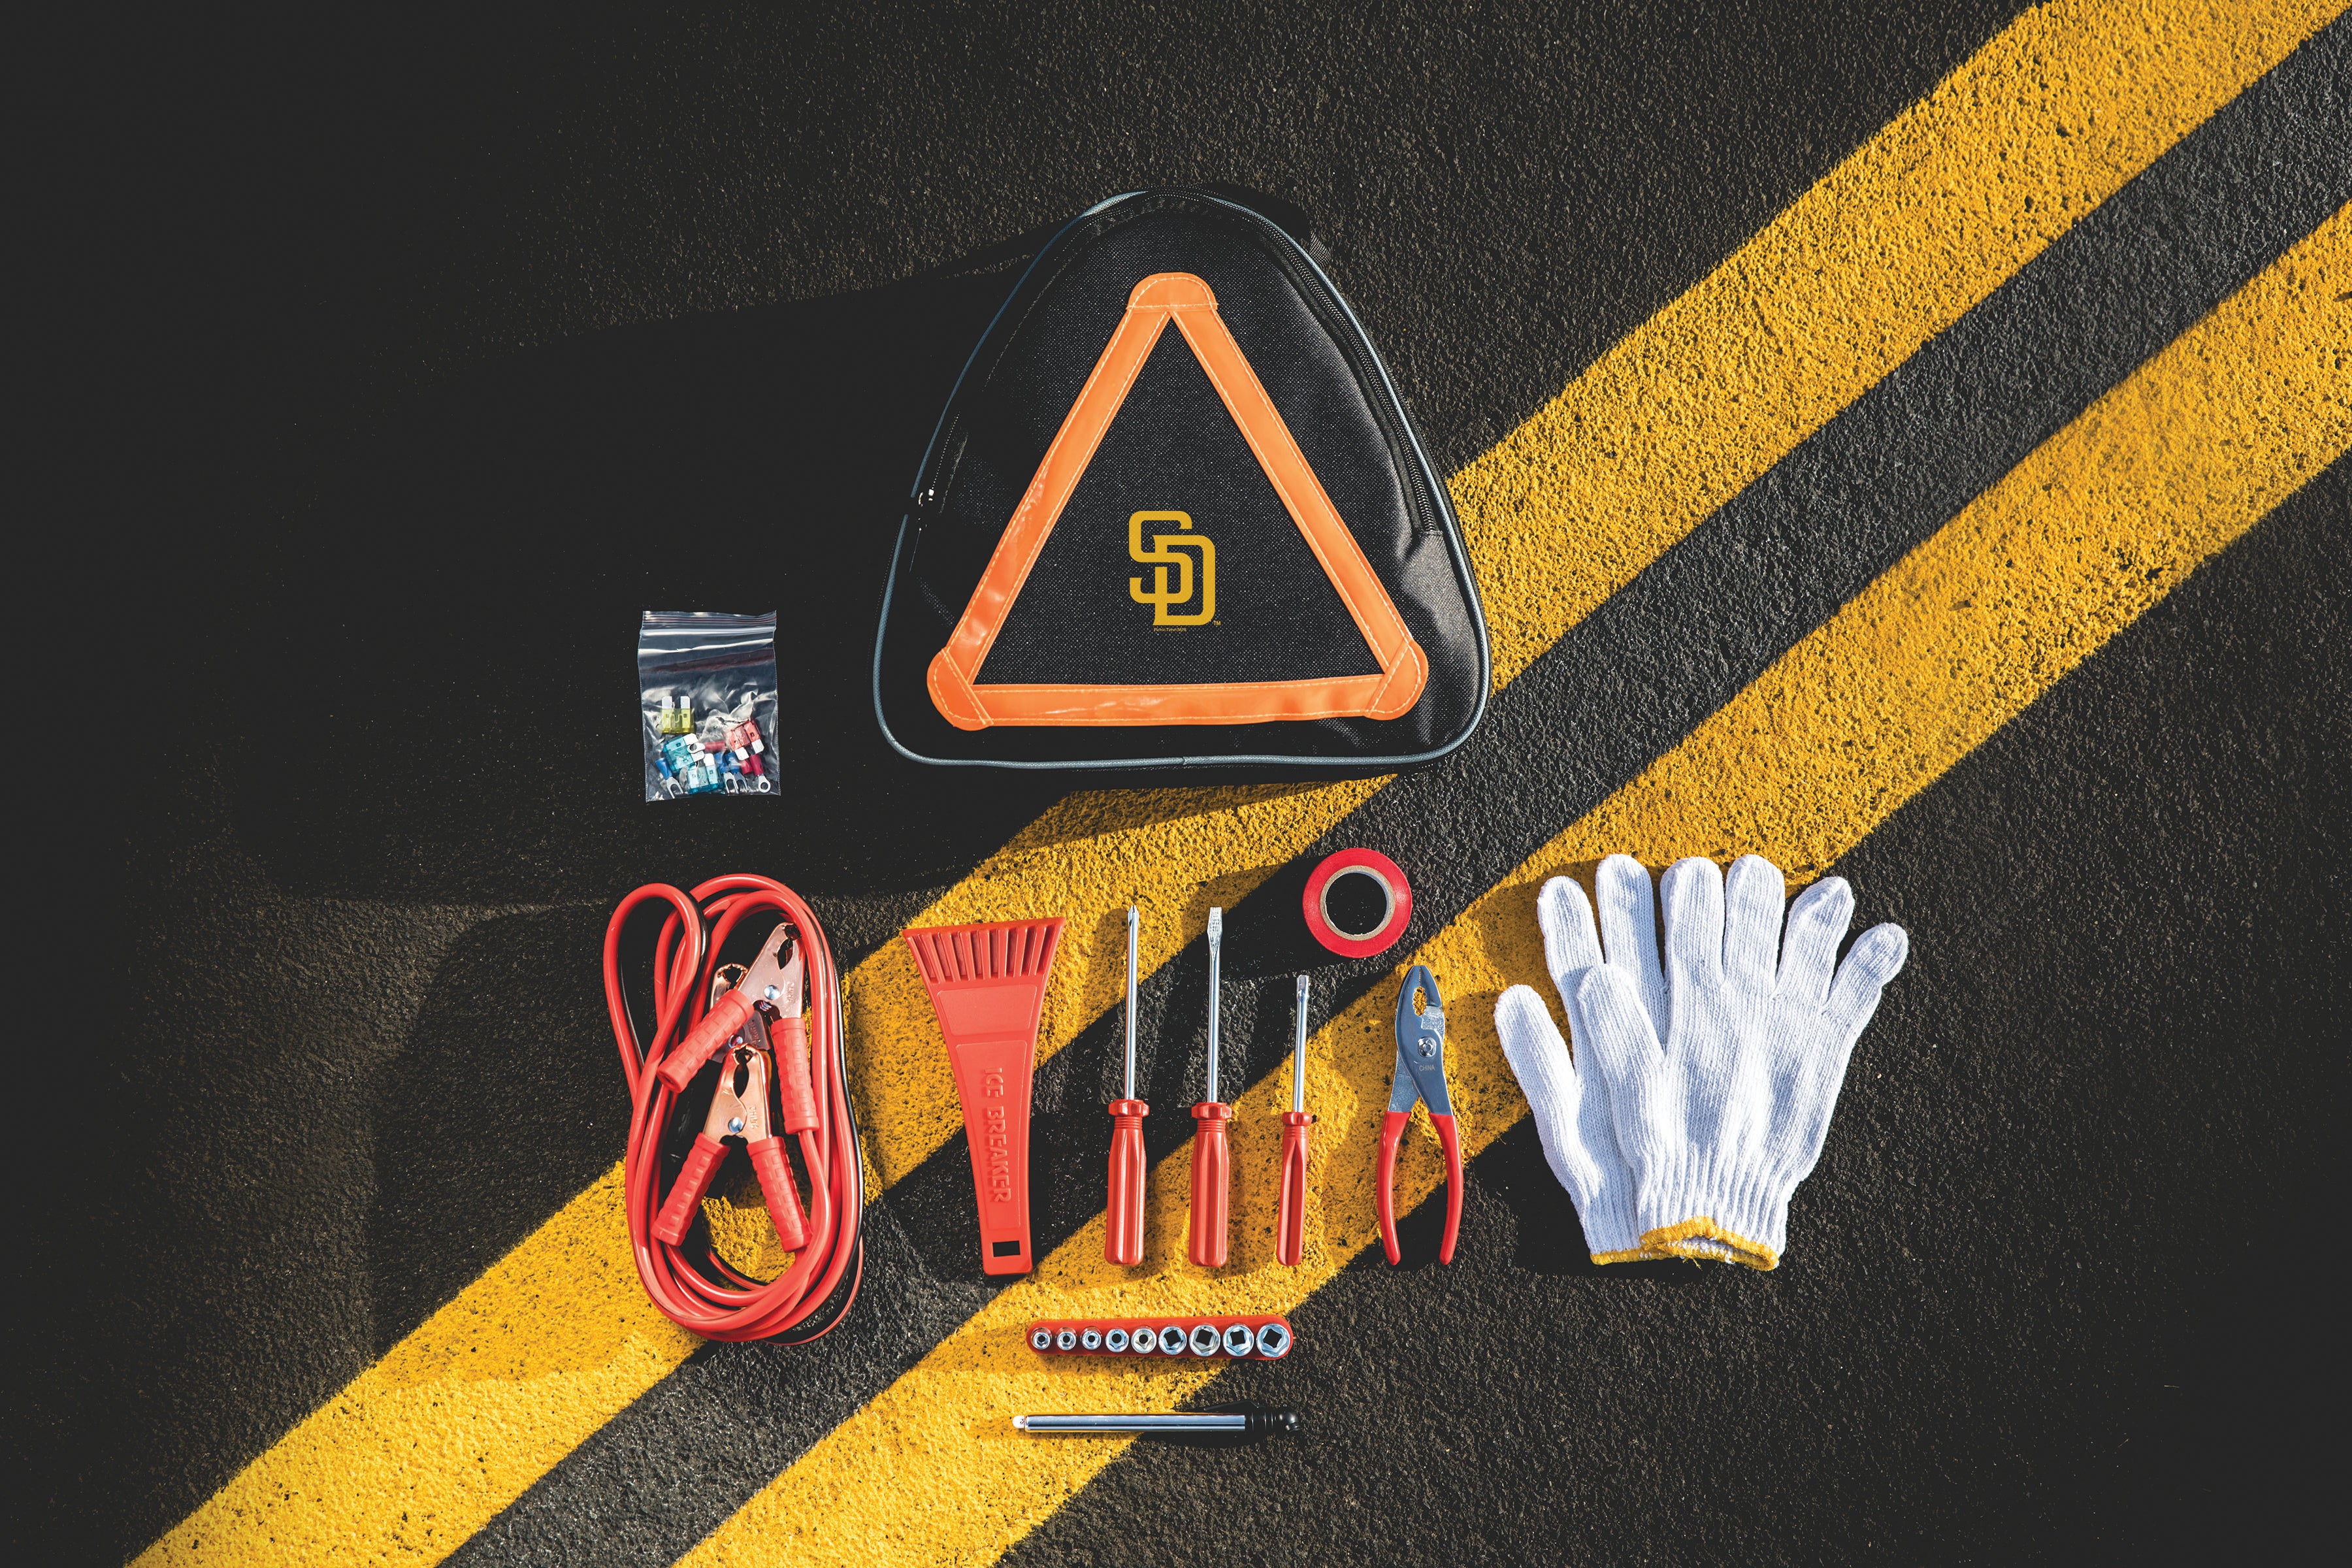 San Diego Padres - Roadside Emergency Car Kit